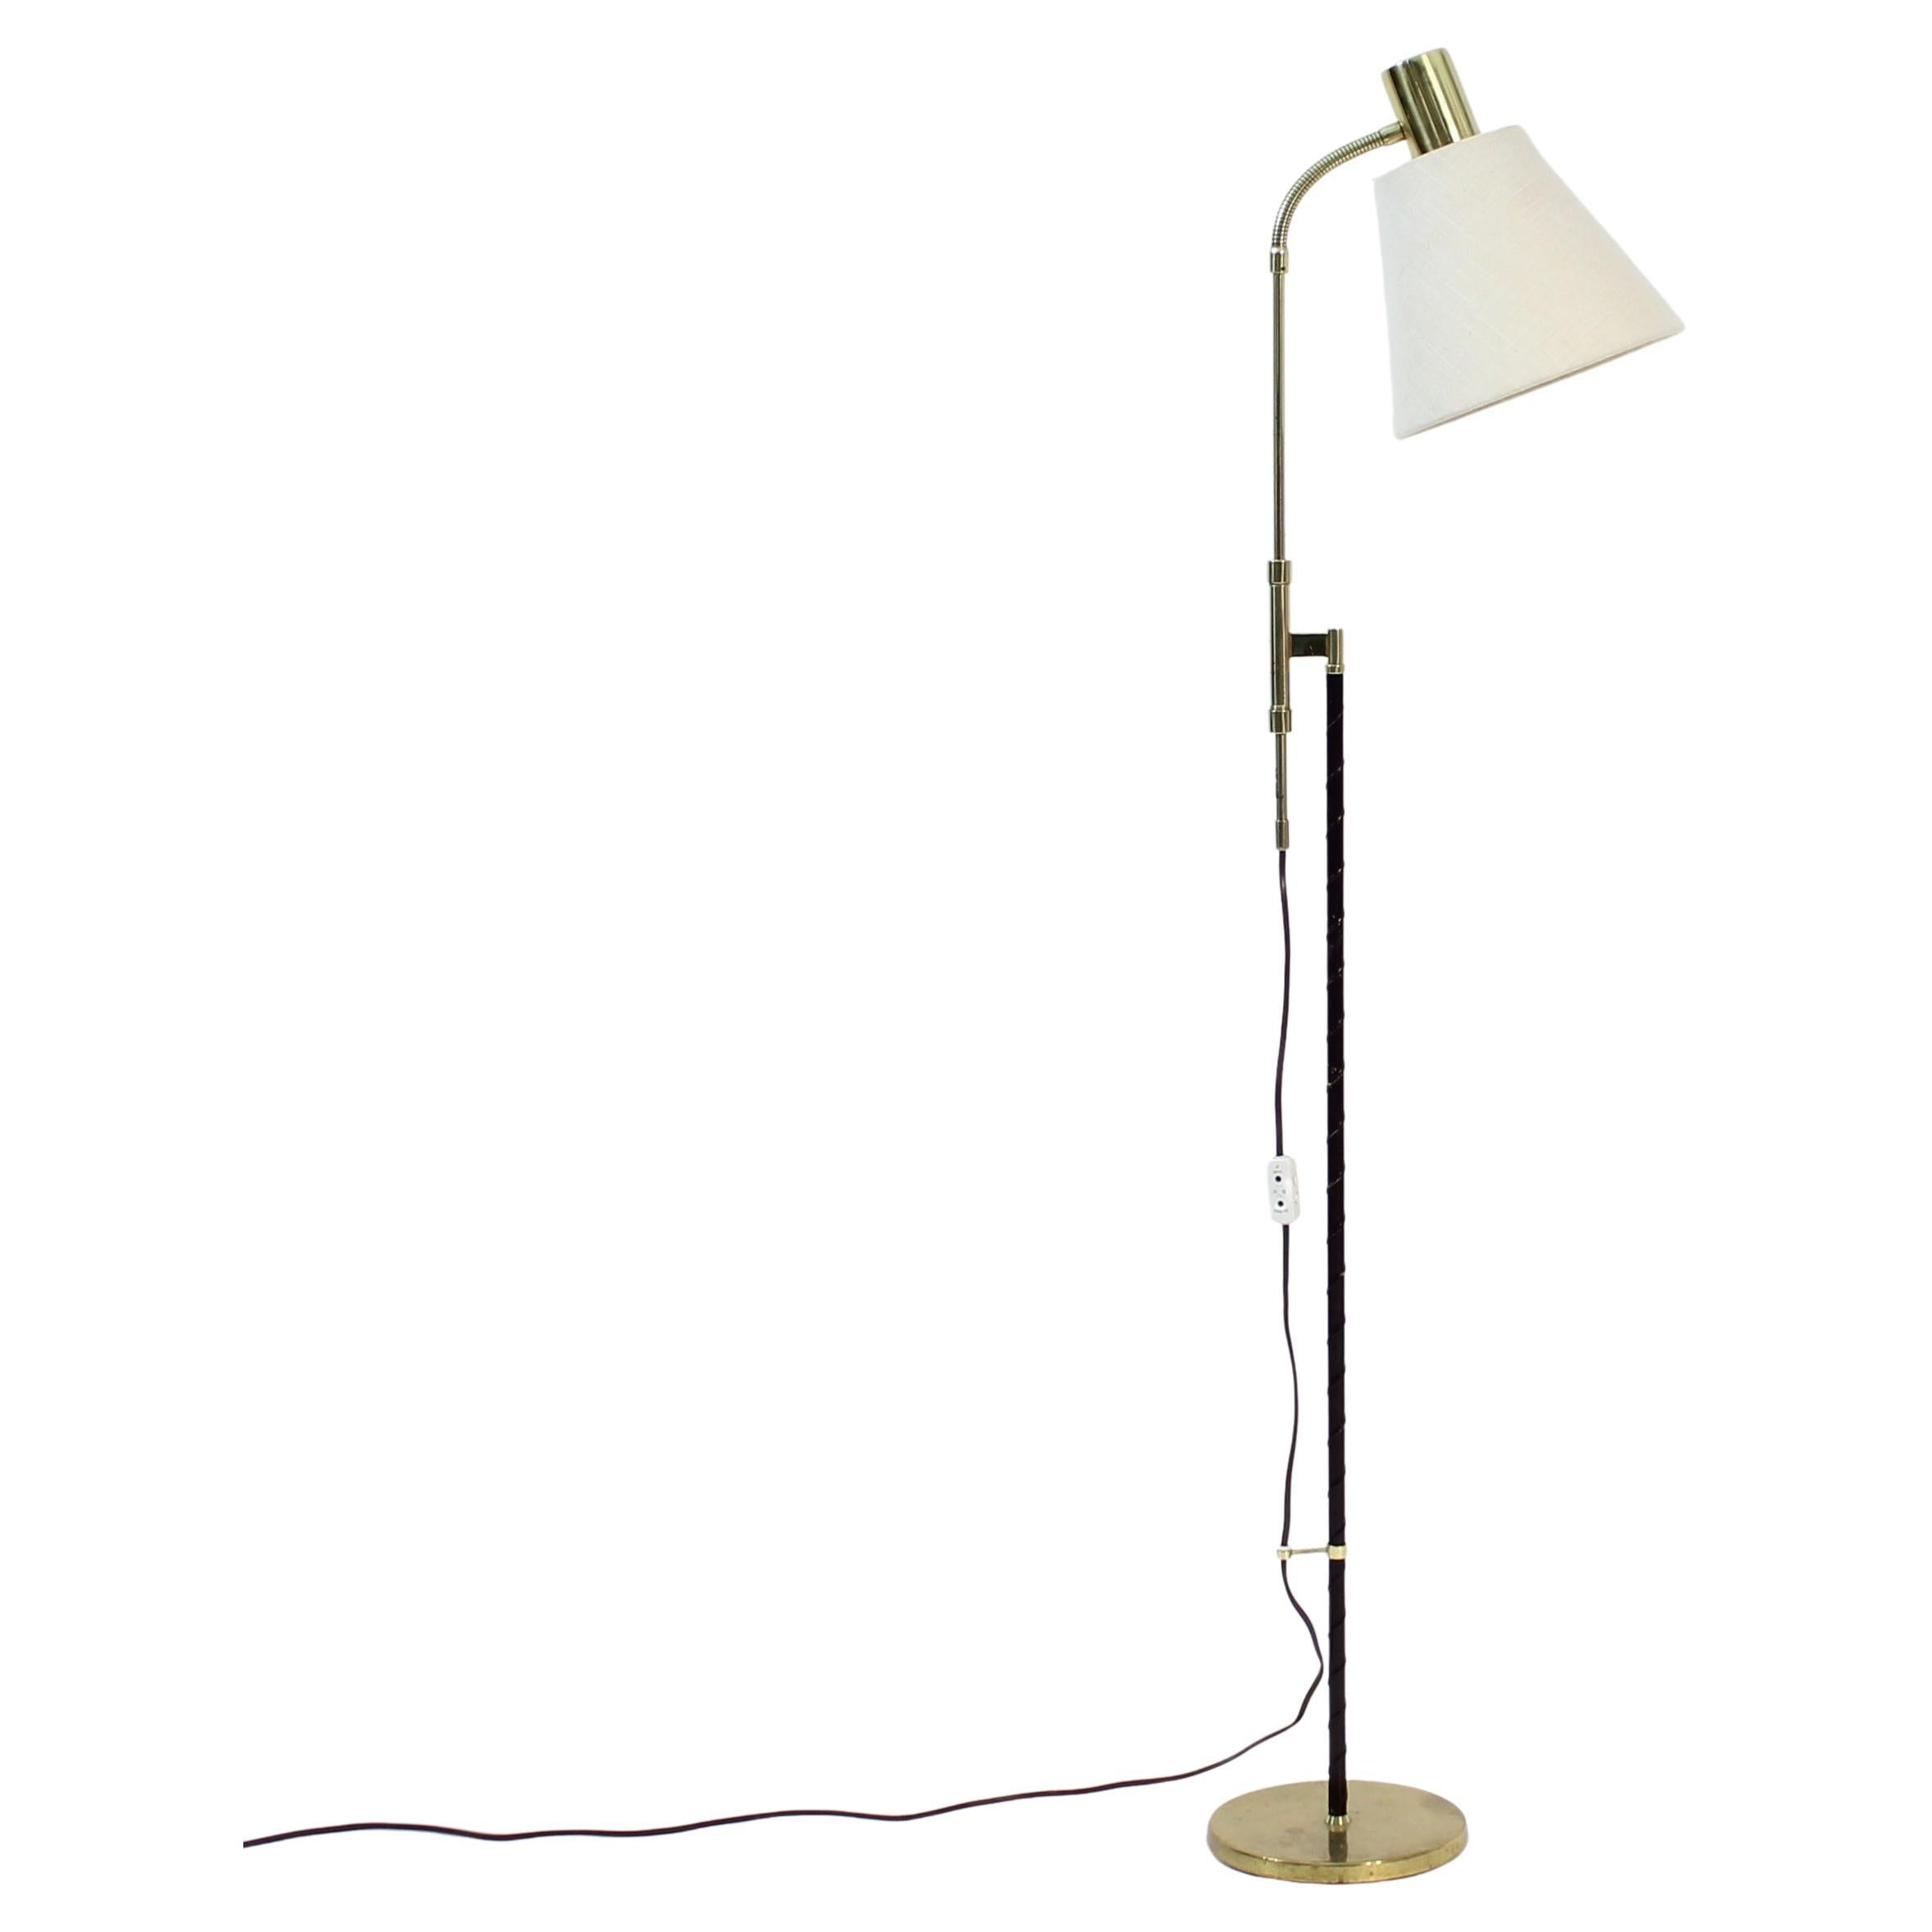 Swedish height adjustable floor lamp by MAE (Möller Armatur Eskilstuna), 1960s For Sale